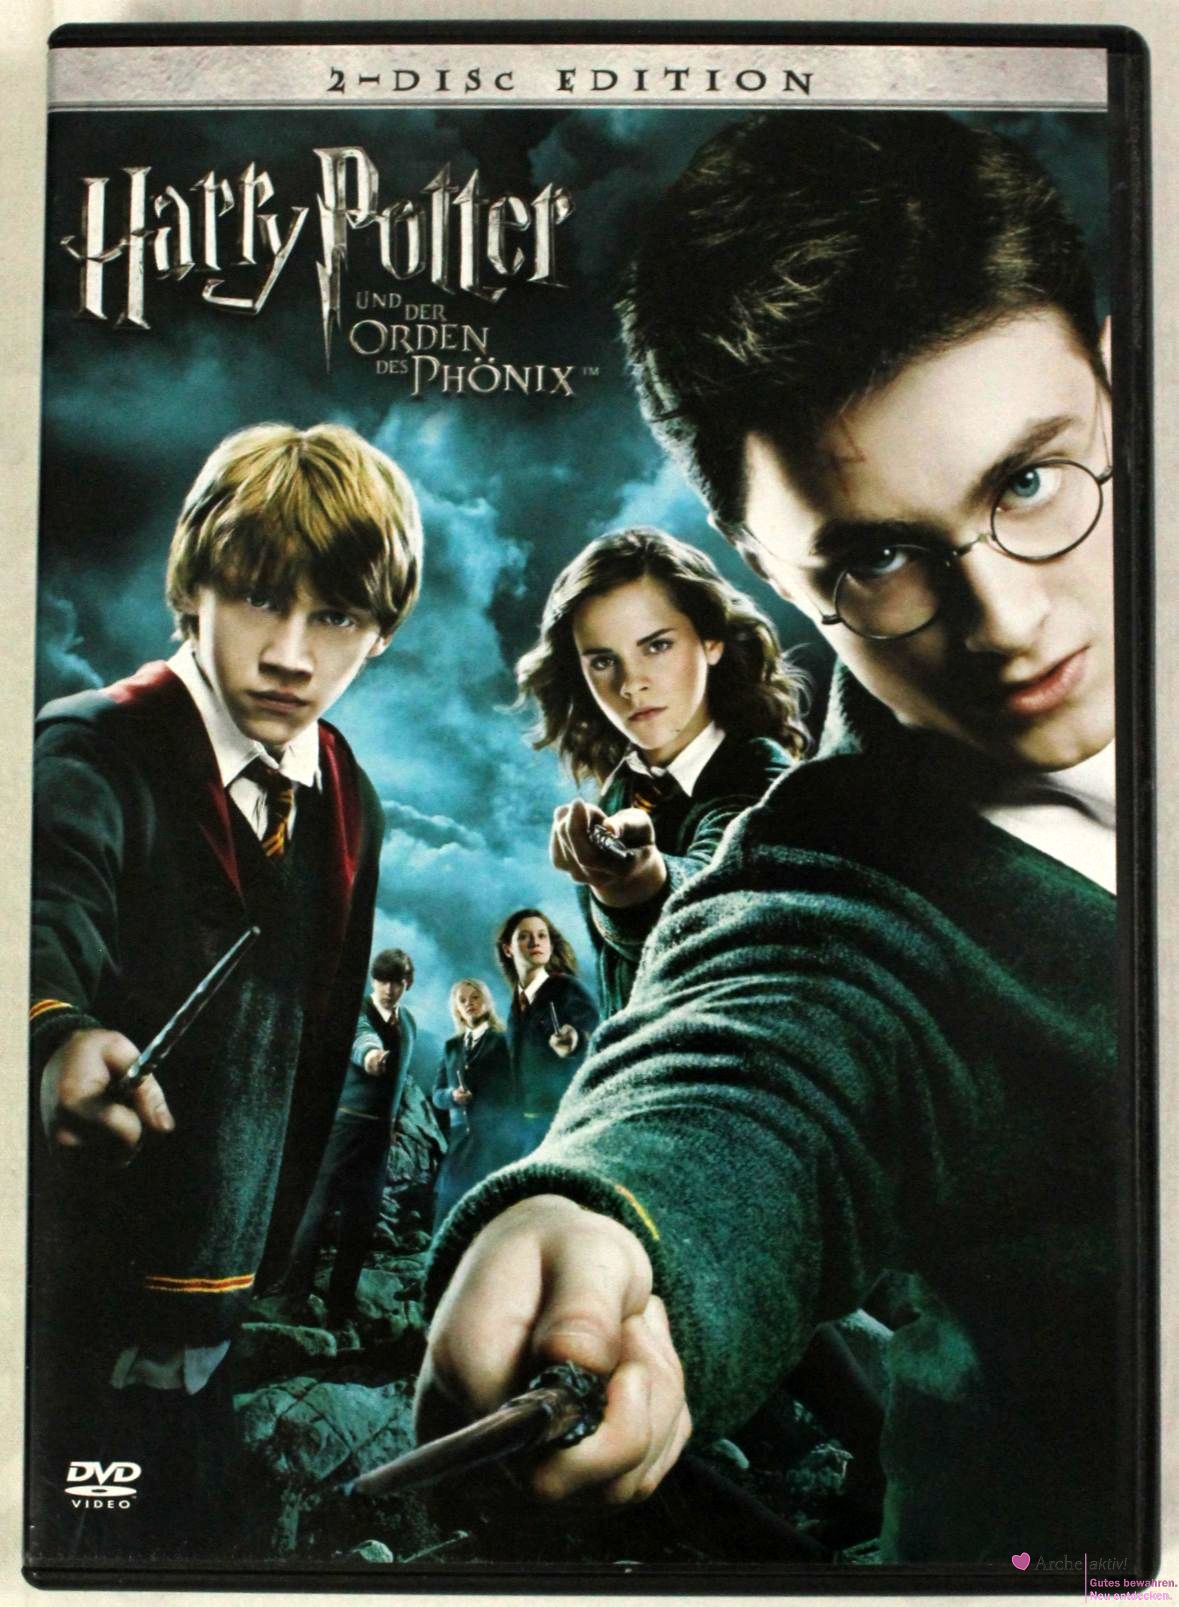 Harry Potter und der Orden des Phönix, 2-Disc Edition, gebraucht